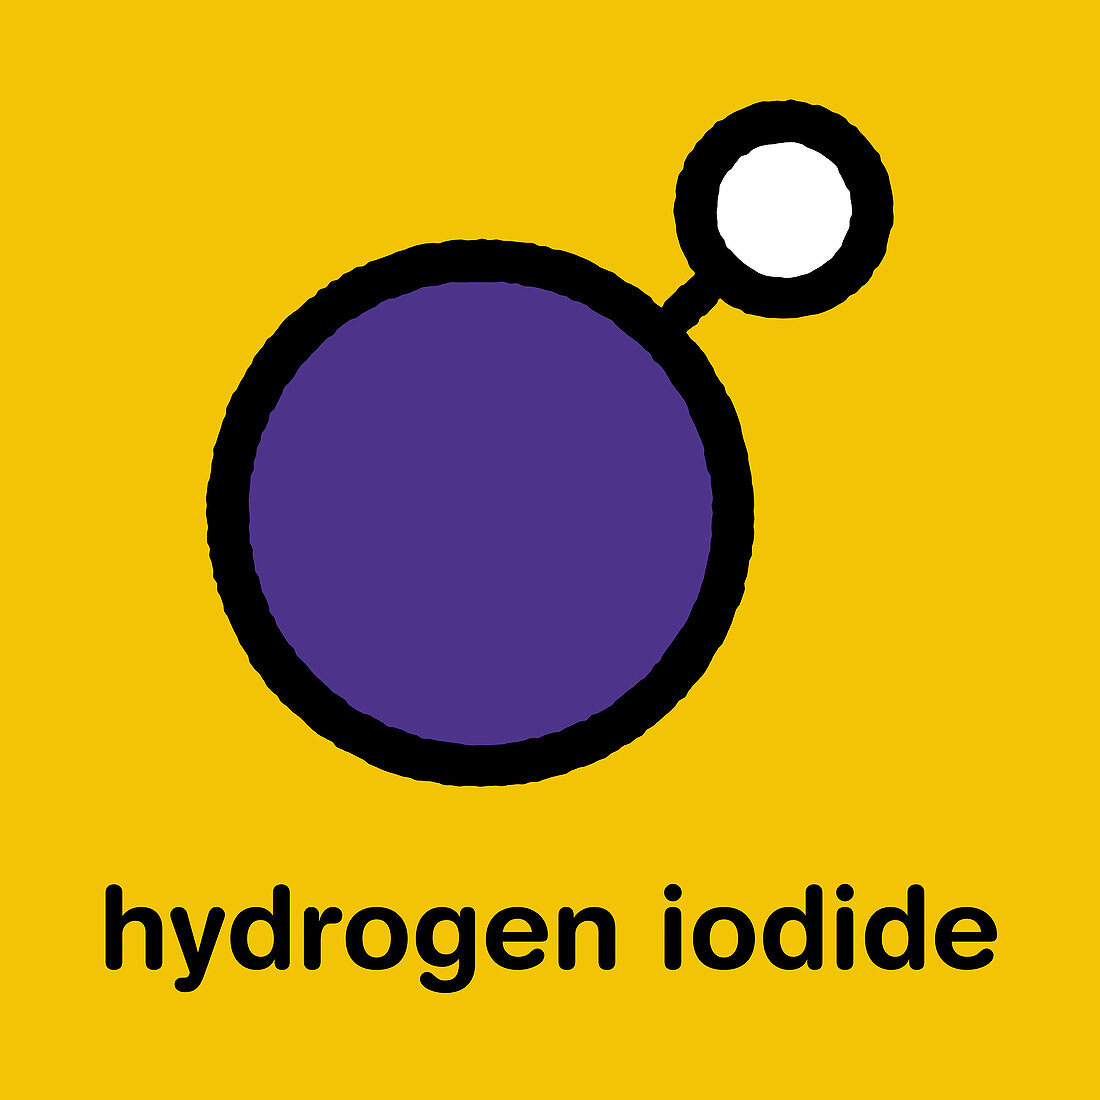 Hydrogen iodide molecule